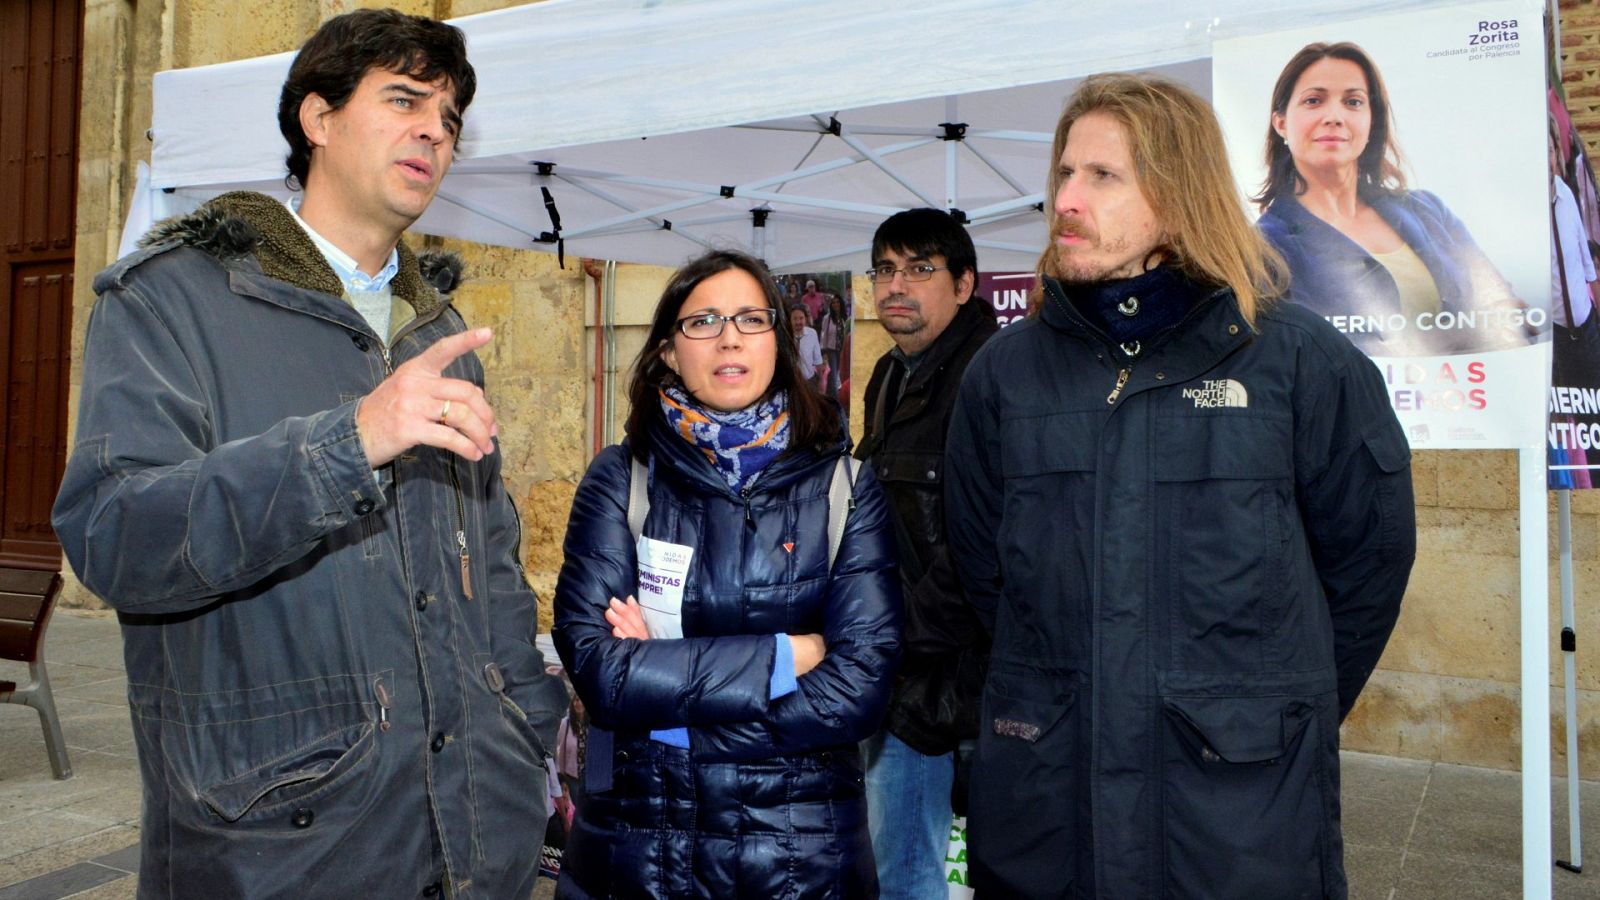 El coordinador de IU Castilla y León, Juan Gascón (i), y el coordinador de Podemos, Pablo Fernández (d), junto a Rosa Zurita (c)